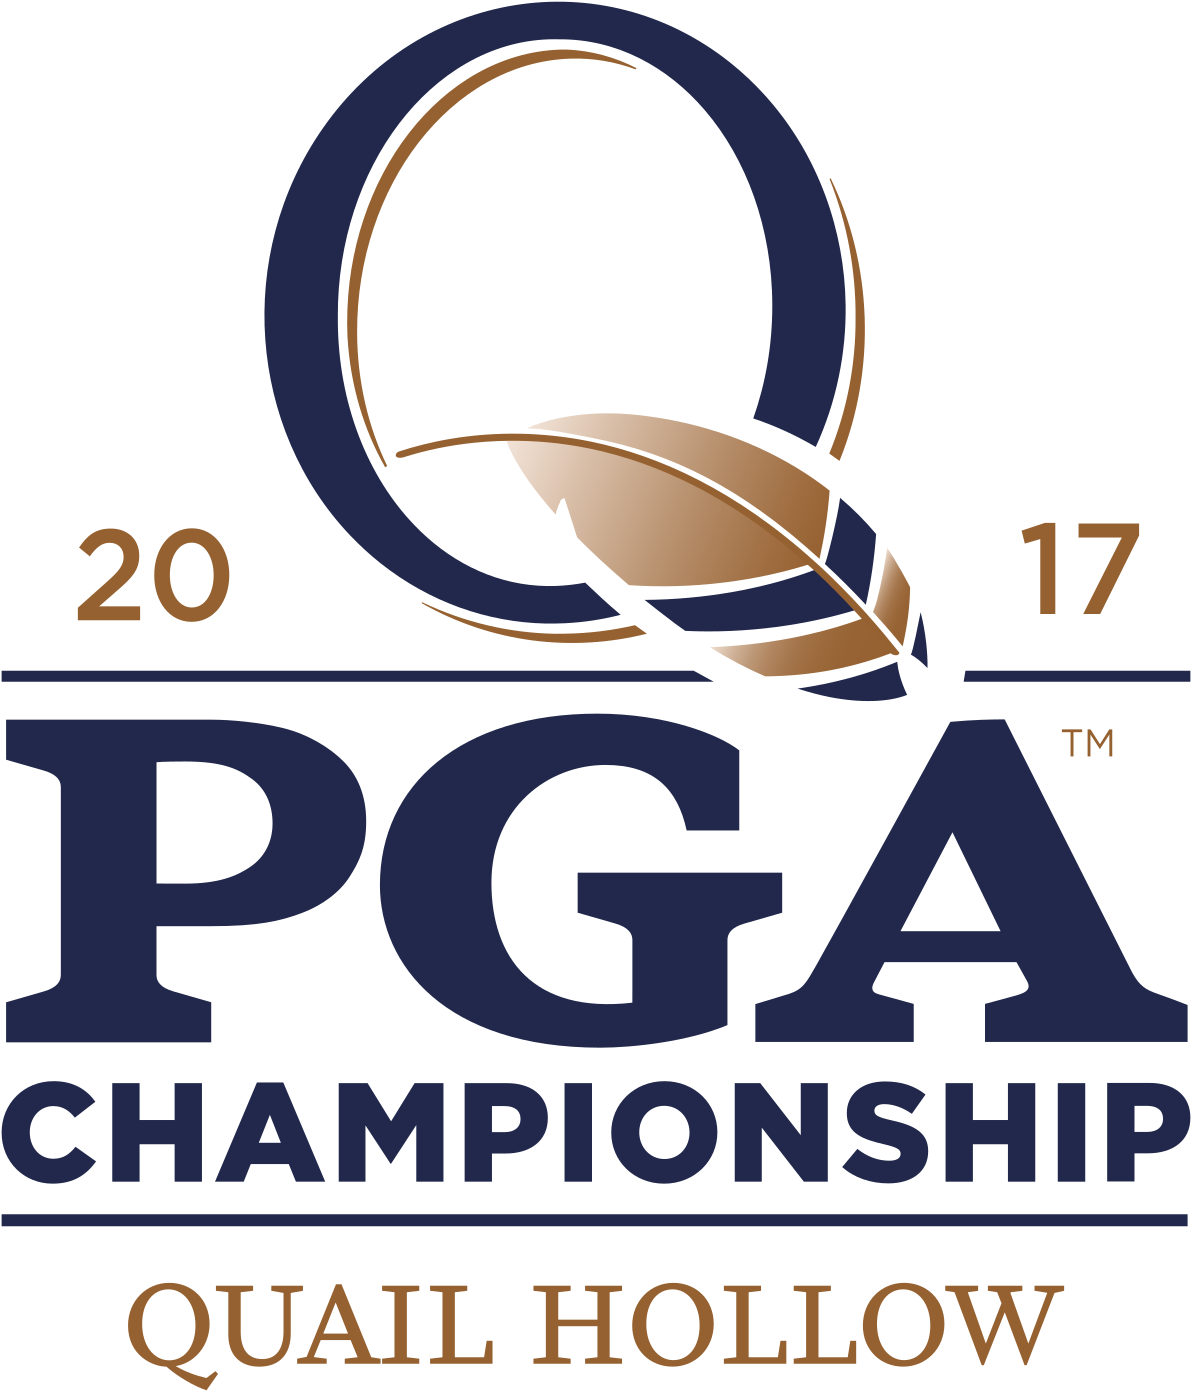 2017 Pga Championship Pga Championship 2017 Logo Clipart Large Size